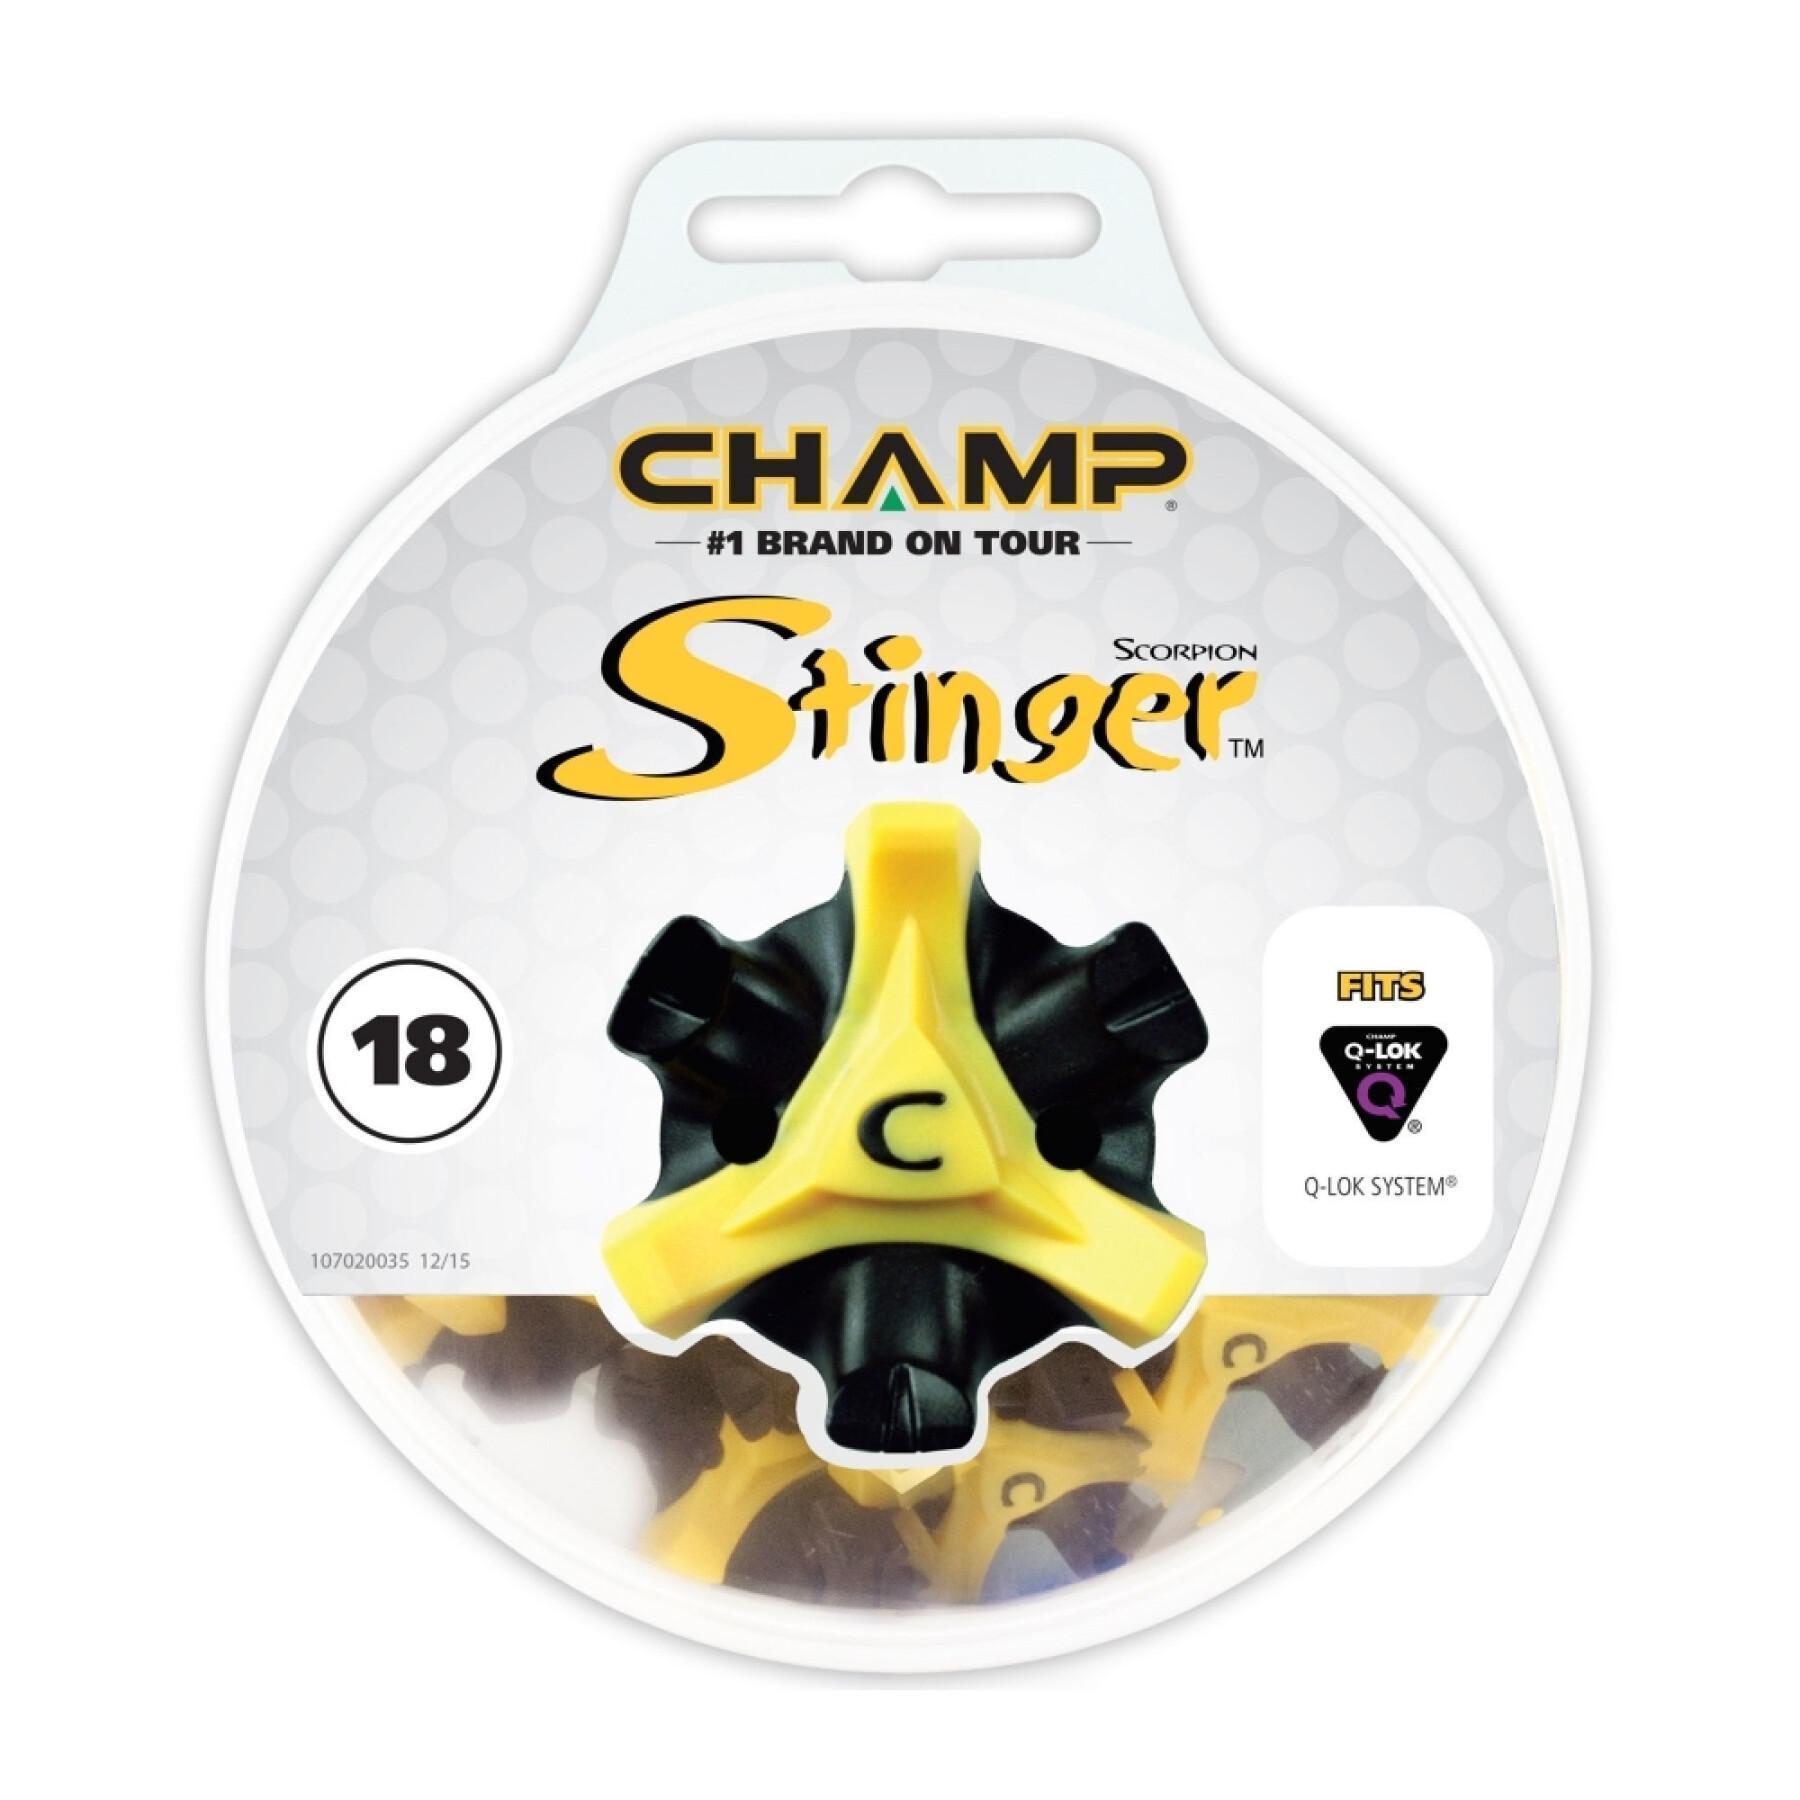 Klemme Champ Stinger fast twist 3,0 disk